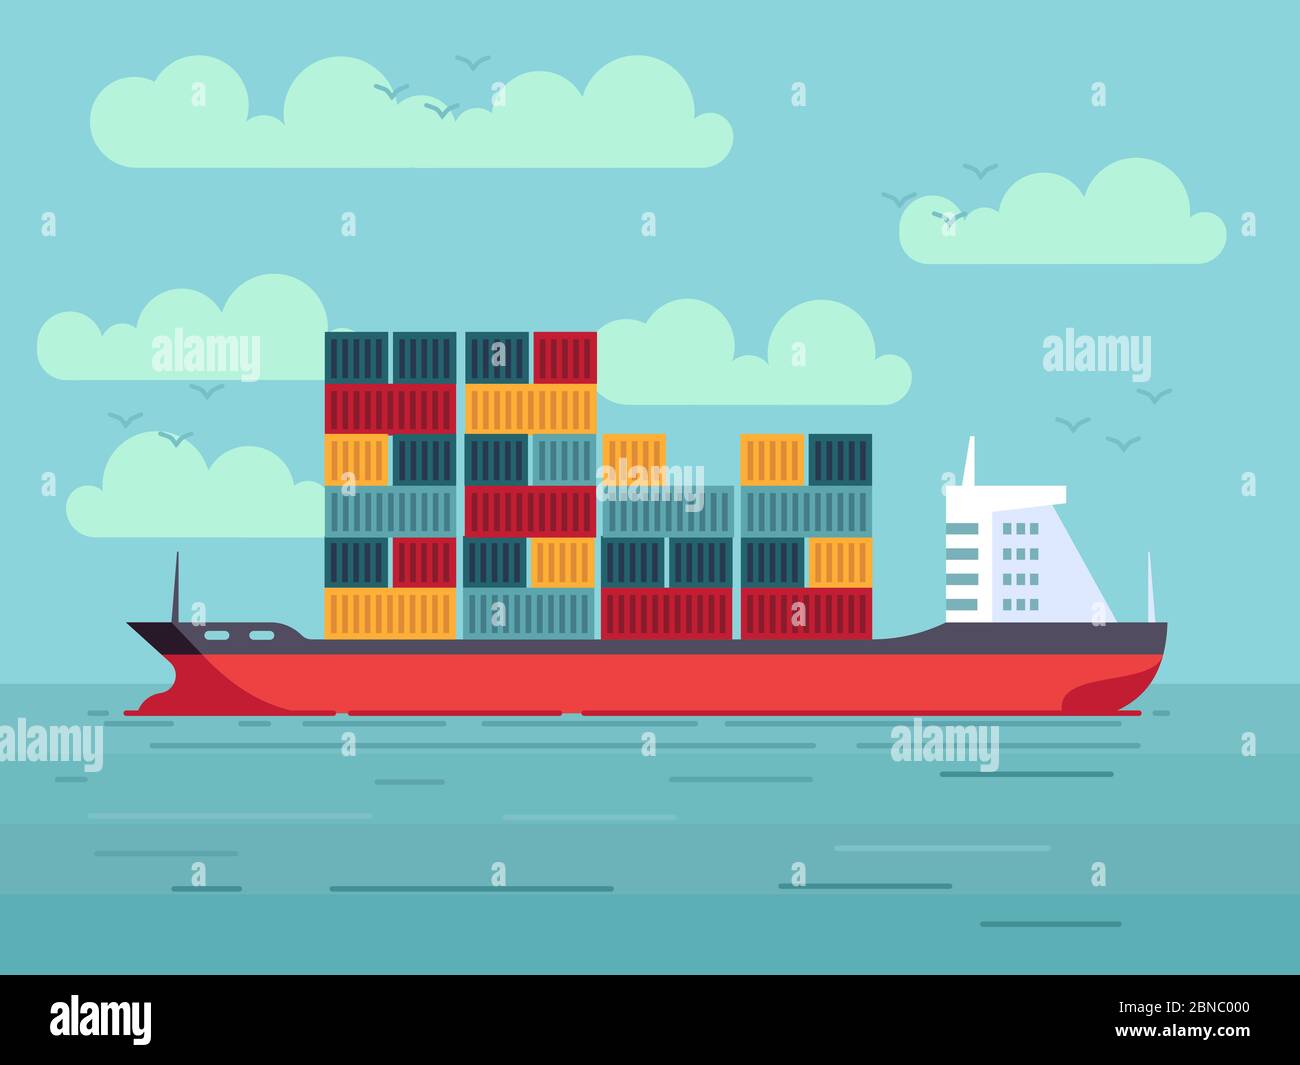 Frachtschiff mit farbigen Containern in Meer oder Meerwasser Vektor Illustration Stock Vektor